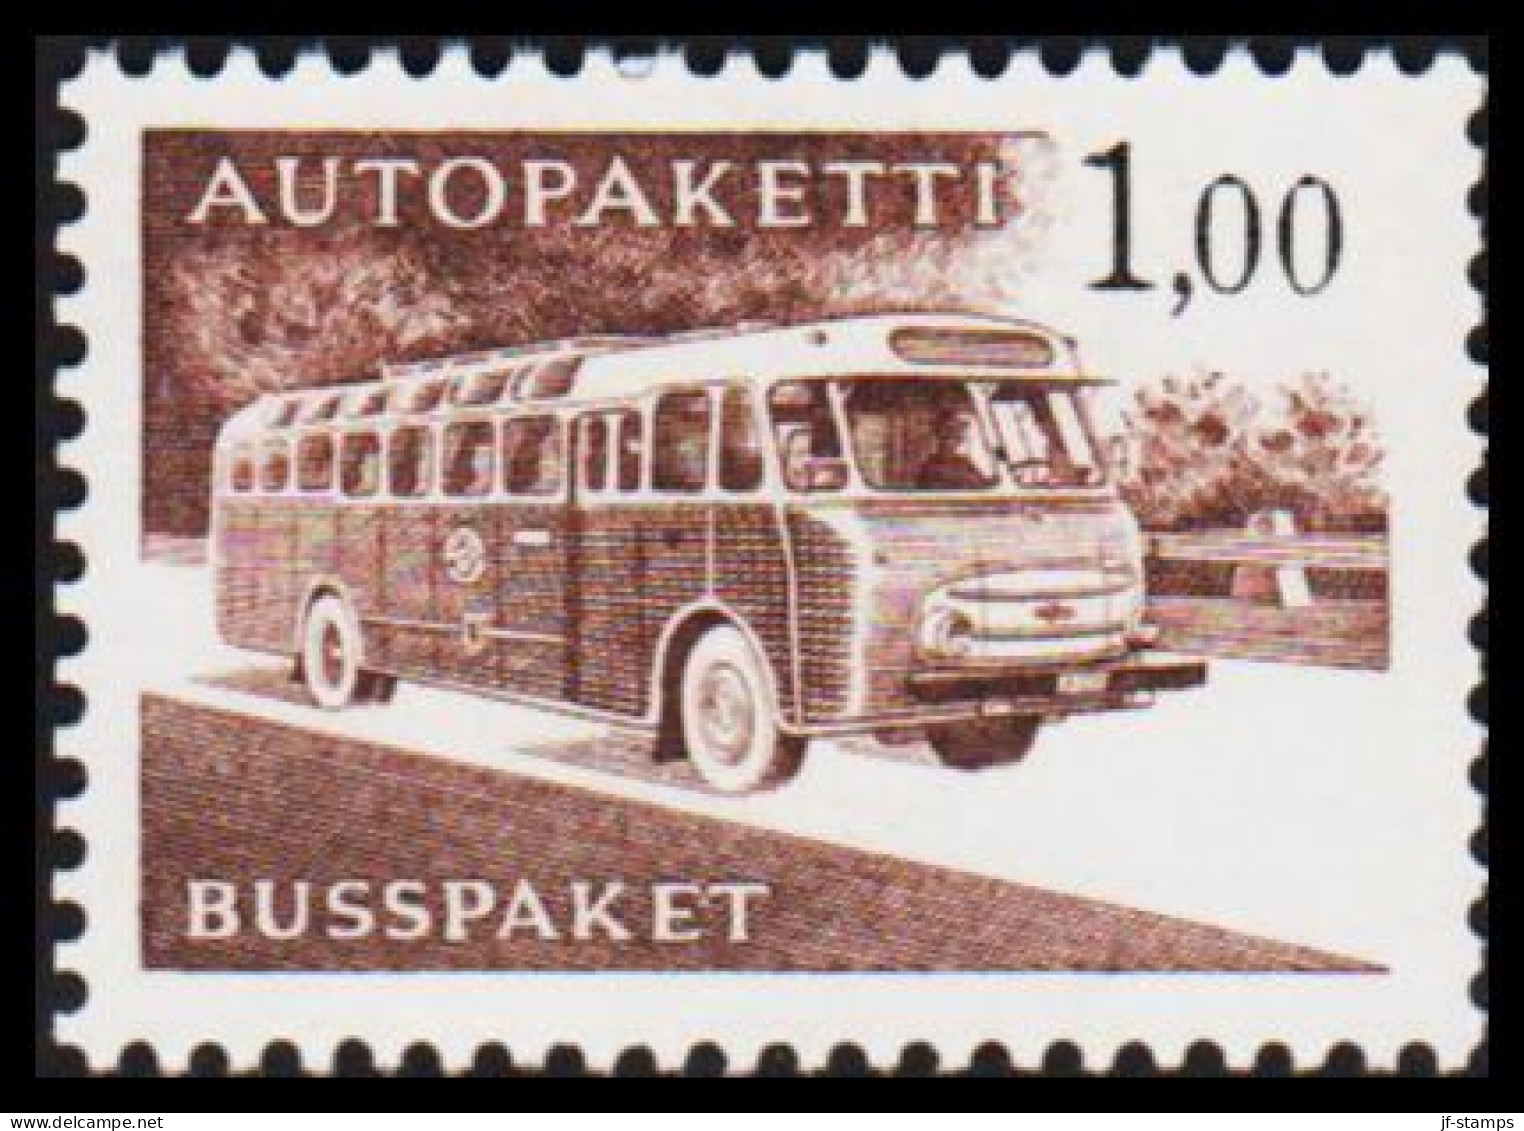 1963-1980. FINLAND. Mail Bus. 1,00 Mk. AUTOPAKETTI - BUSSPAKET Never Hinged. Lumogen Paper... (Michel AP 13y) - JF535633 - Bus Parcels / Colis Par Autobus / Pakjes Per Postbus